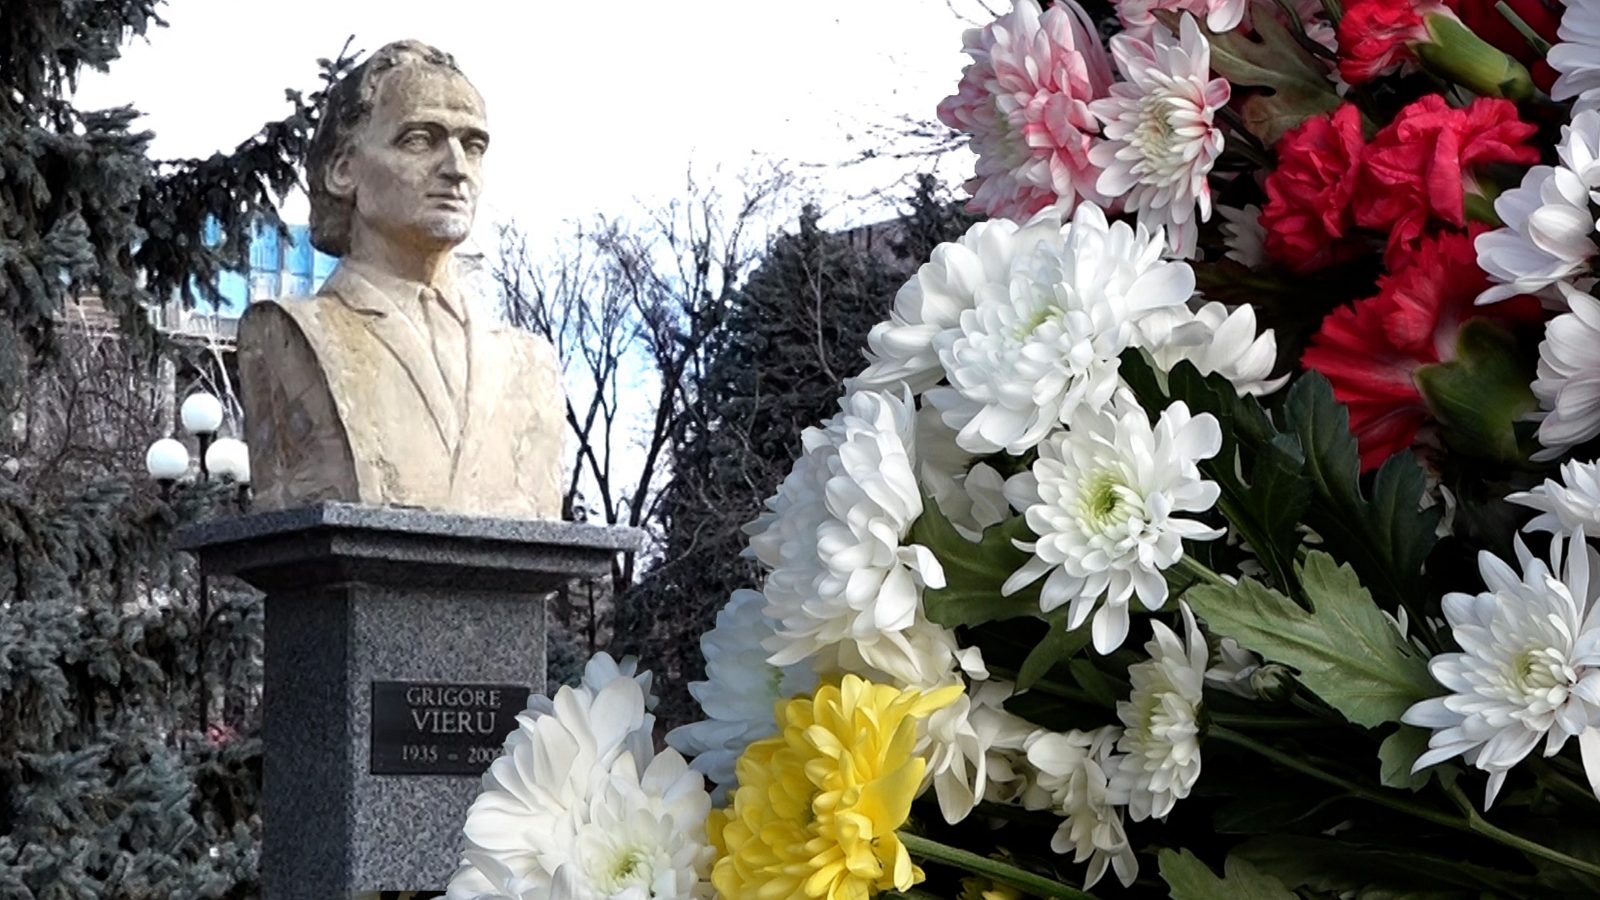 /VIDEO/ Grigore Vieru a fost comemorat la Bălți. Zeci de oameni i-au împânzit bustul cu flori